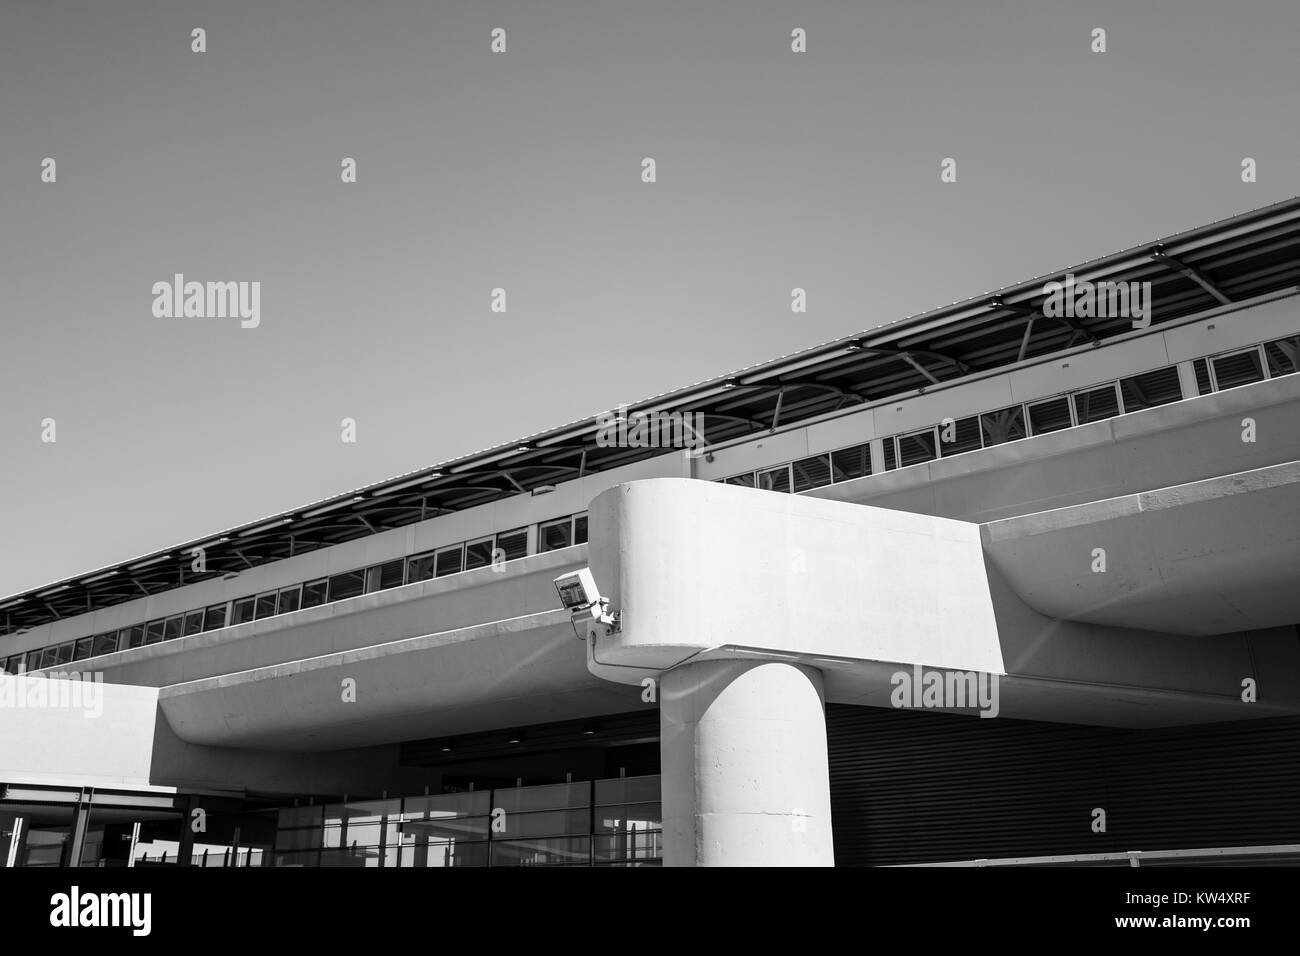 Stazione Airtrain all'Aeroporto Internazionale di San Francisco, South San Francisco, California, 24 settembre 2016. L'airtrain è un sistema automatizzato di treno che sistema di navette di passeggeri tra i terminali dell'aeroporto. Foto Stock